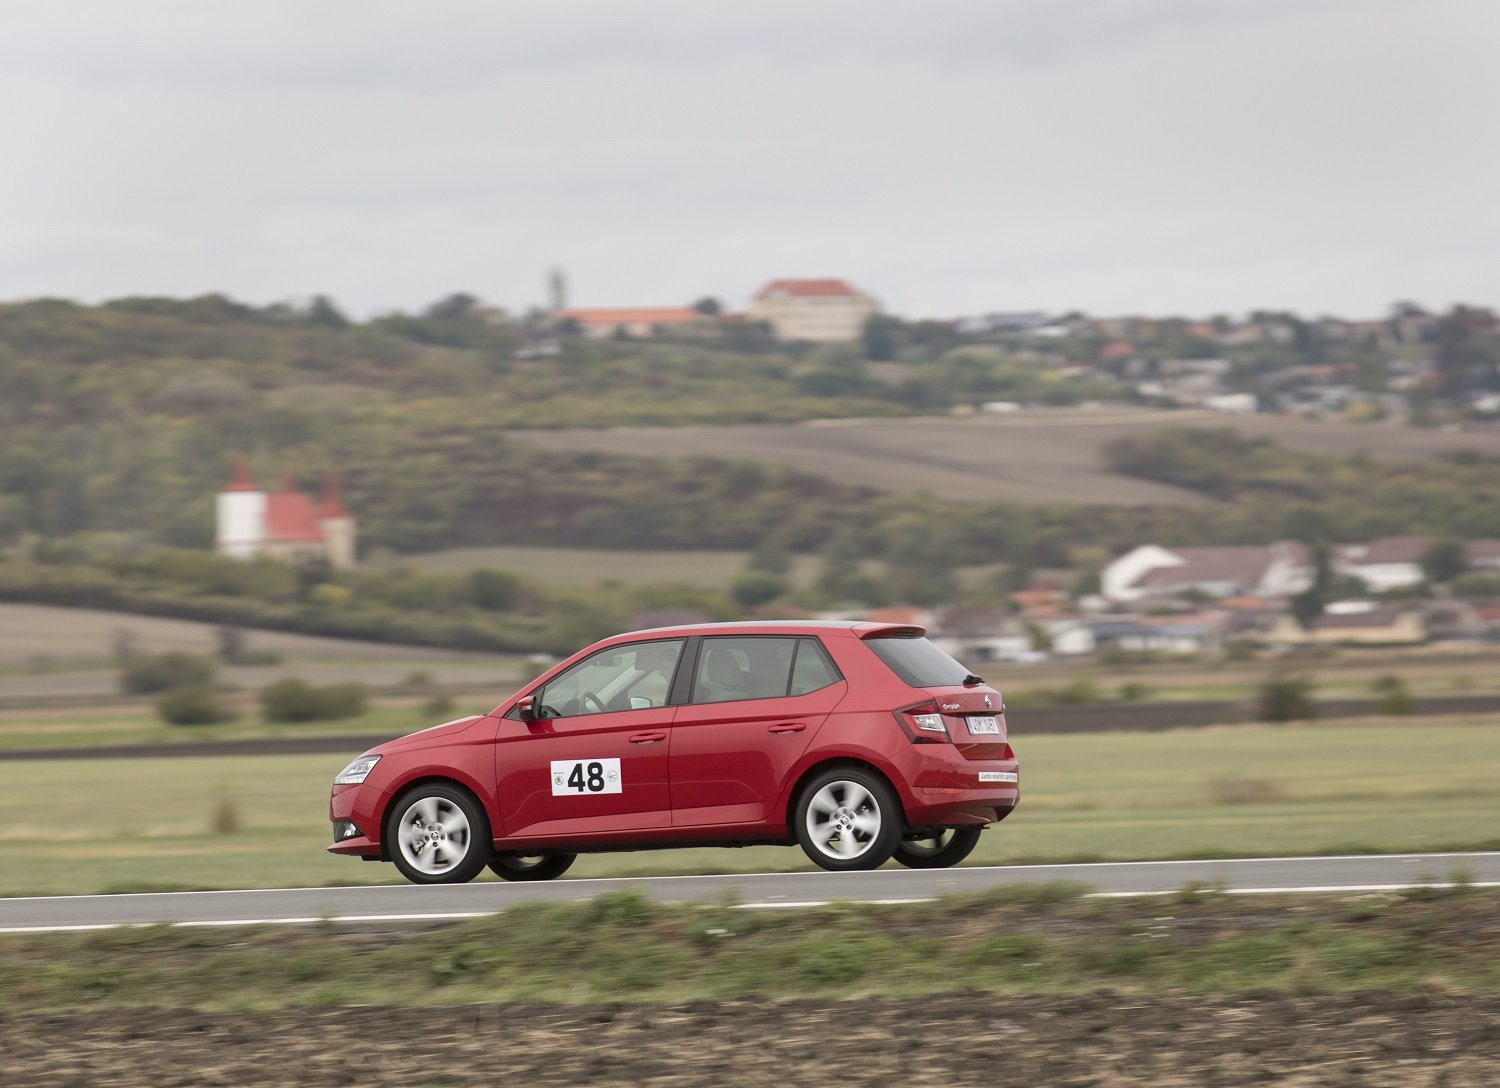 Soutěž Economy Run prověřila nízkou spotřebu vozů Škoda v praxi